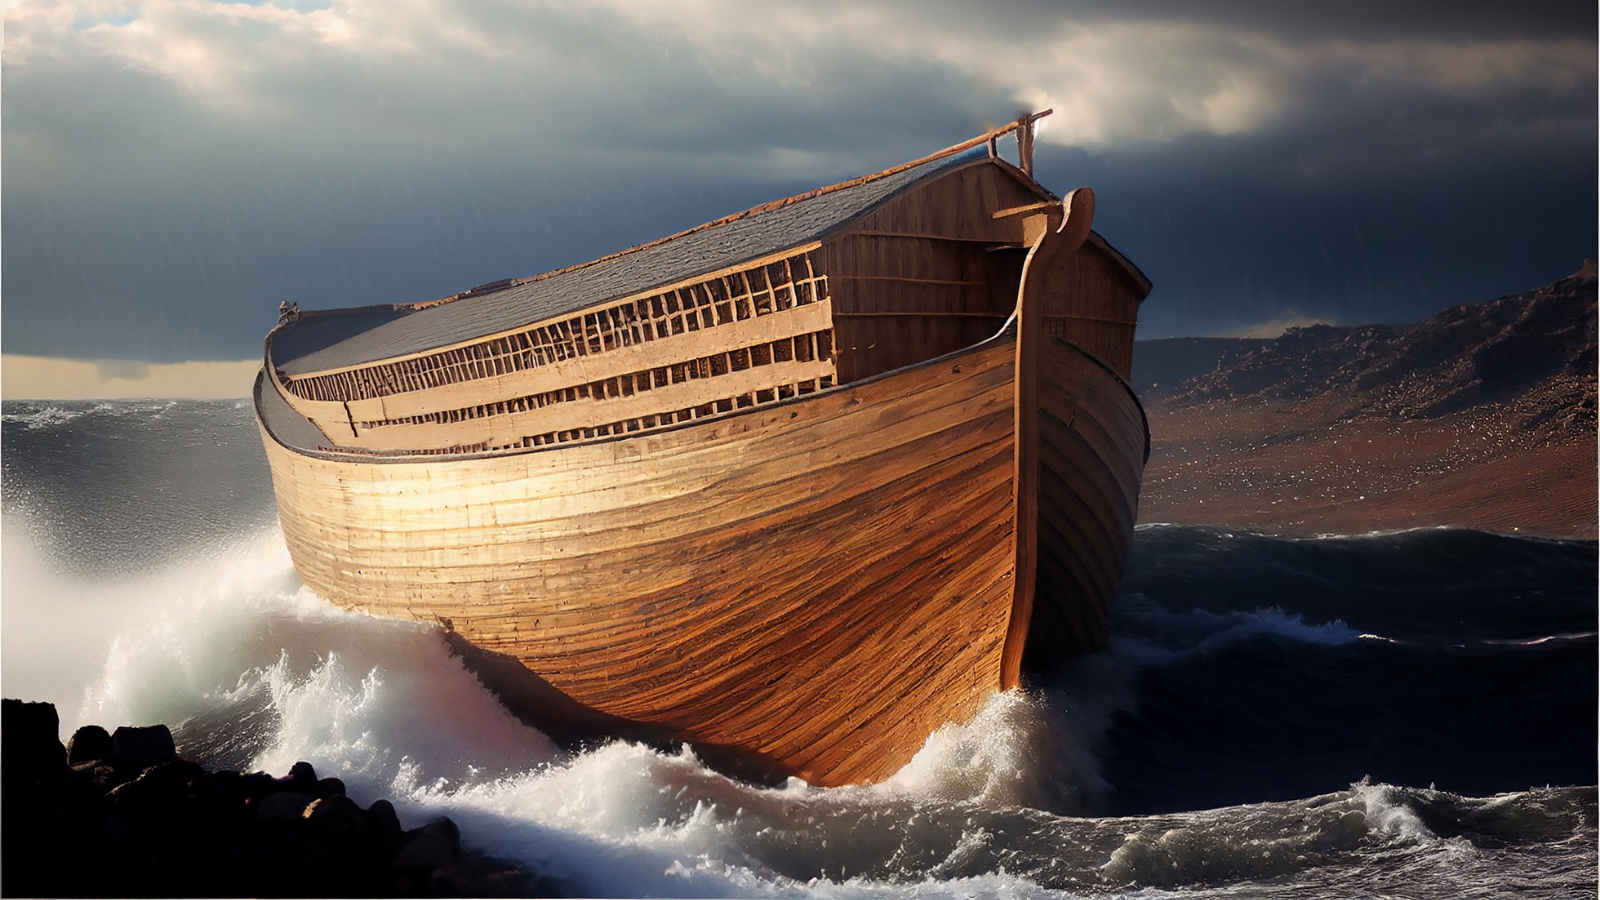 Noah's Ark in a body of water.